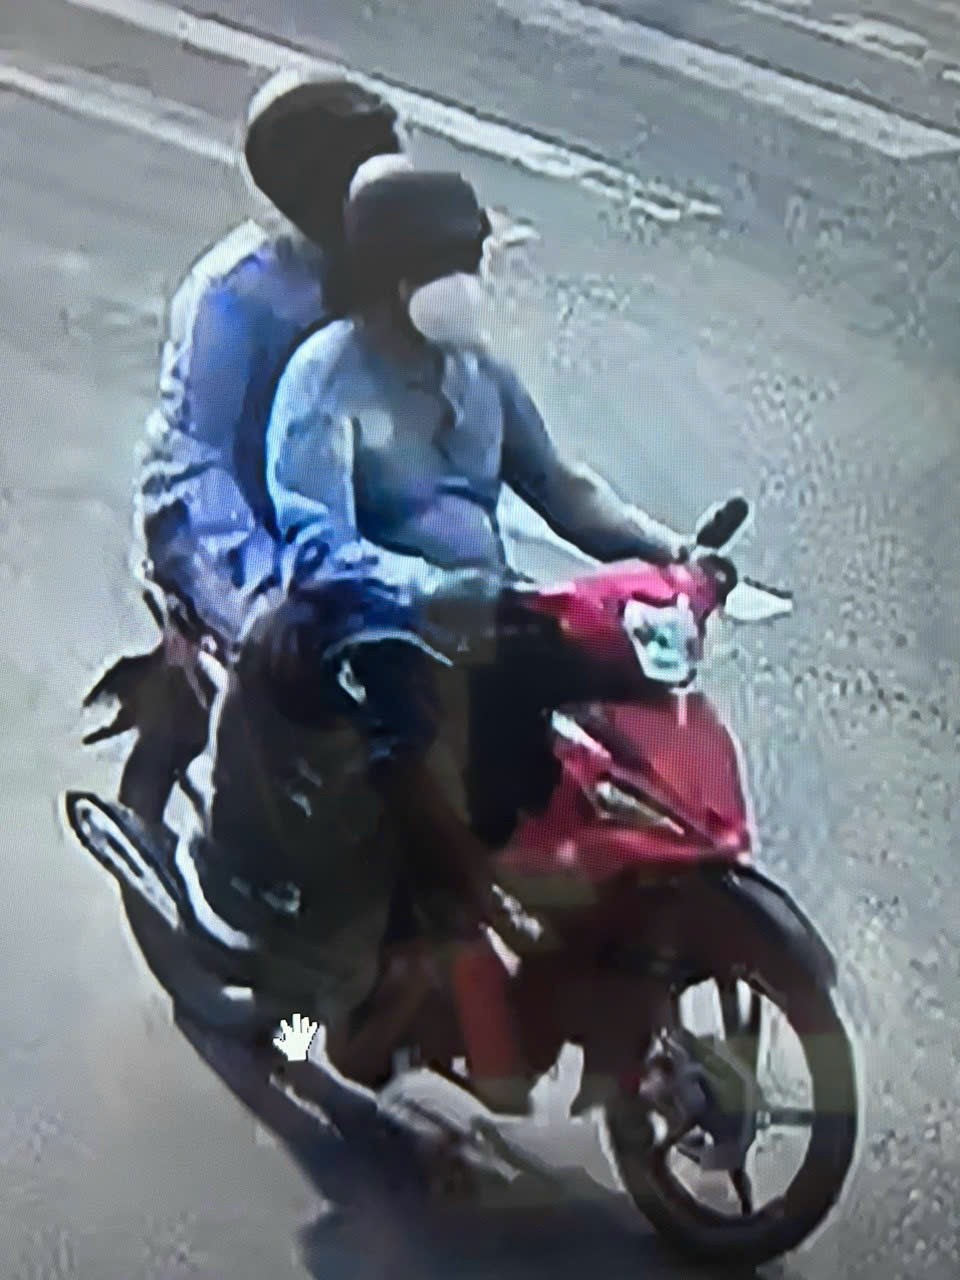 An ninh - Hình sự - Khánh Hòa: 2 đối tượng cướp tiệm vàng ở Cam Ranh cầm 3 khẩu súng